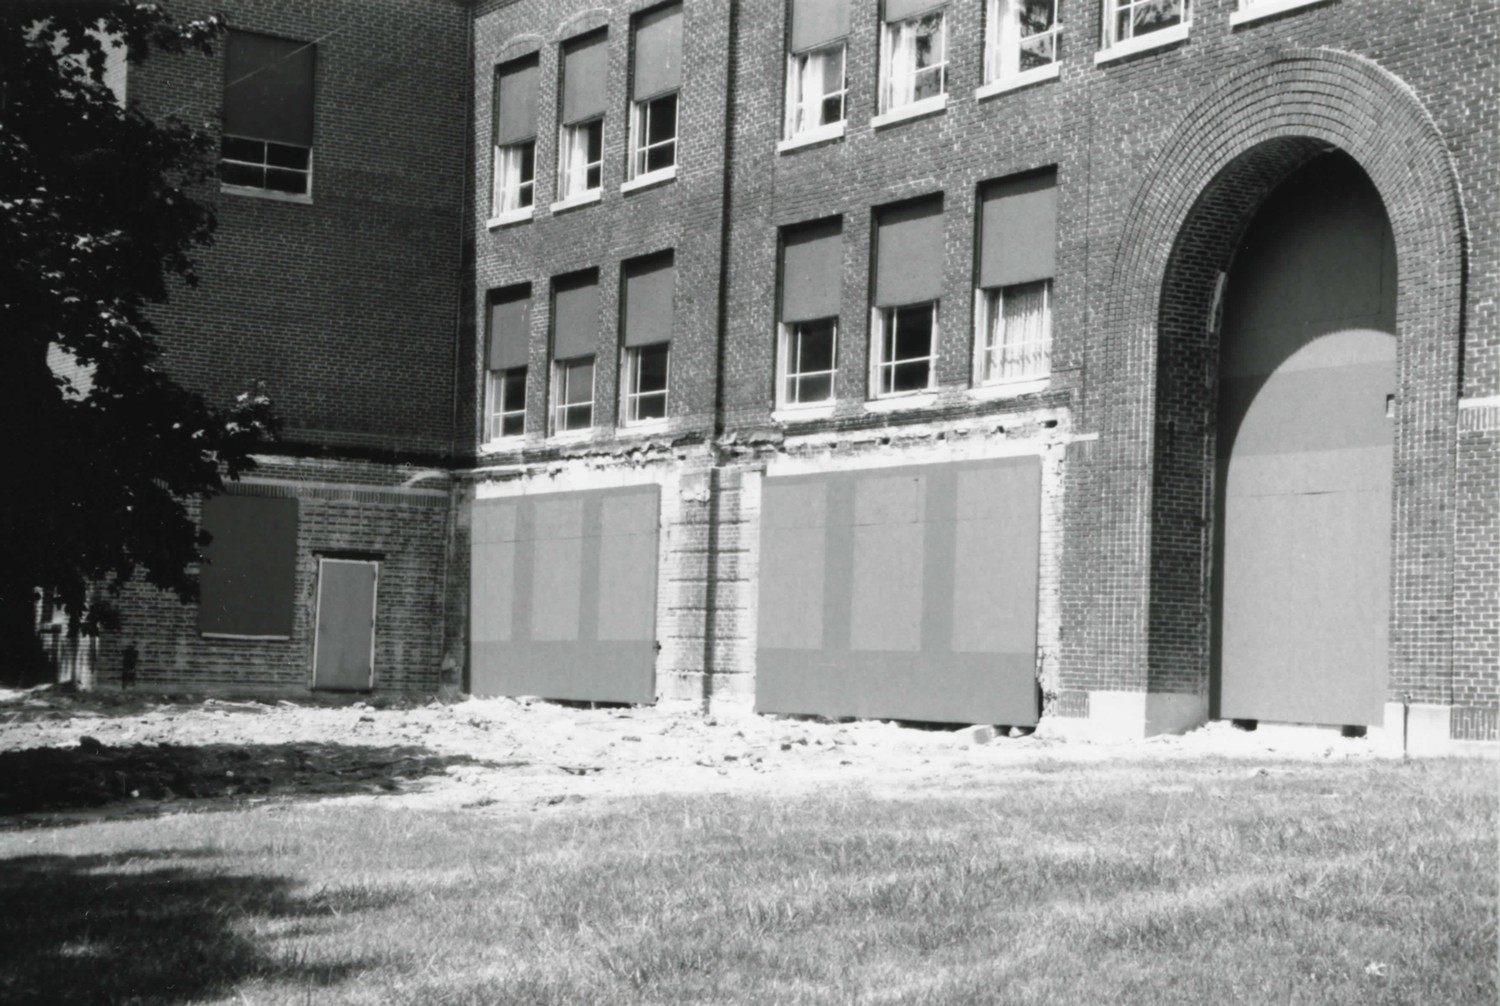 Springfield Township School, Ontario Ohio Facade and entry detail (2002)